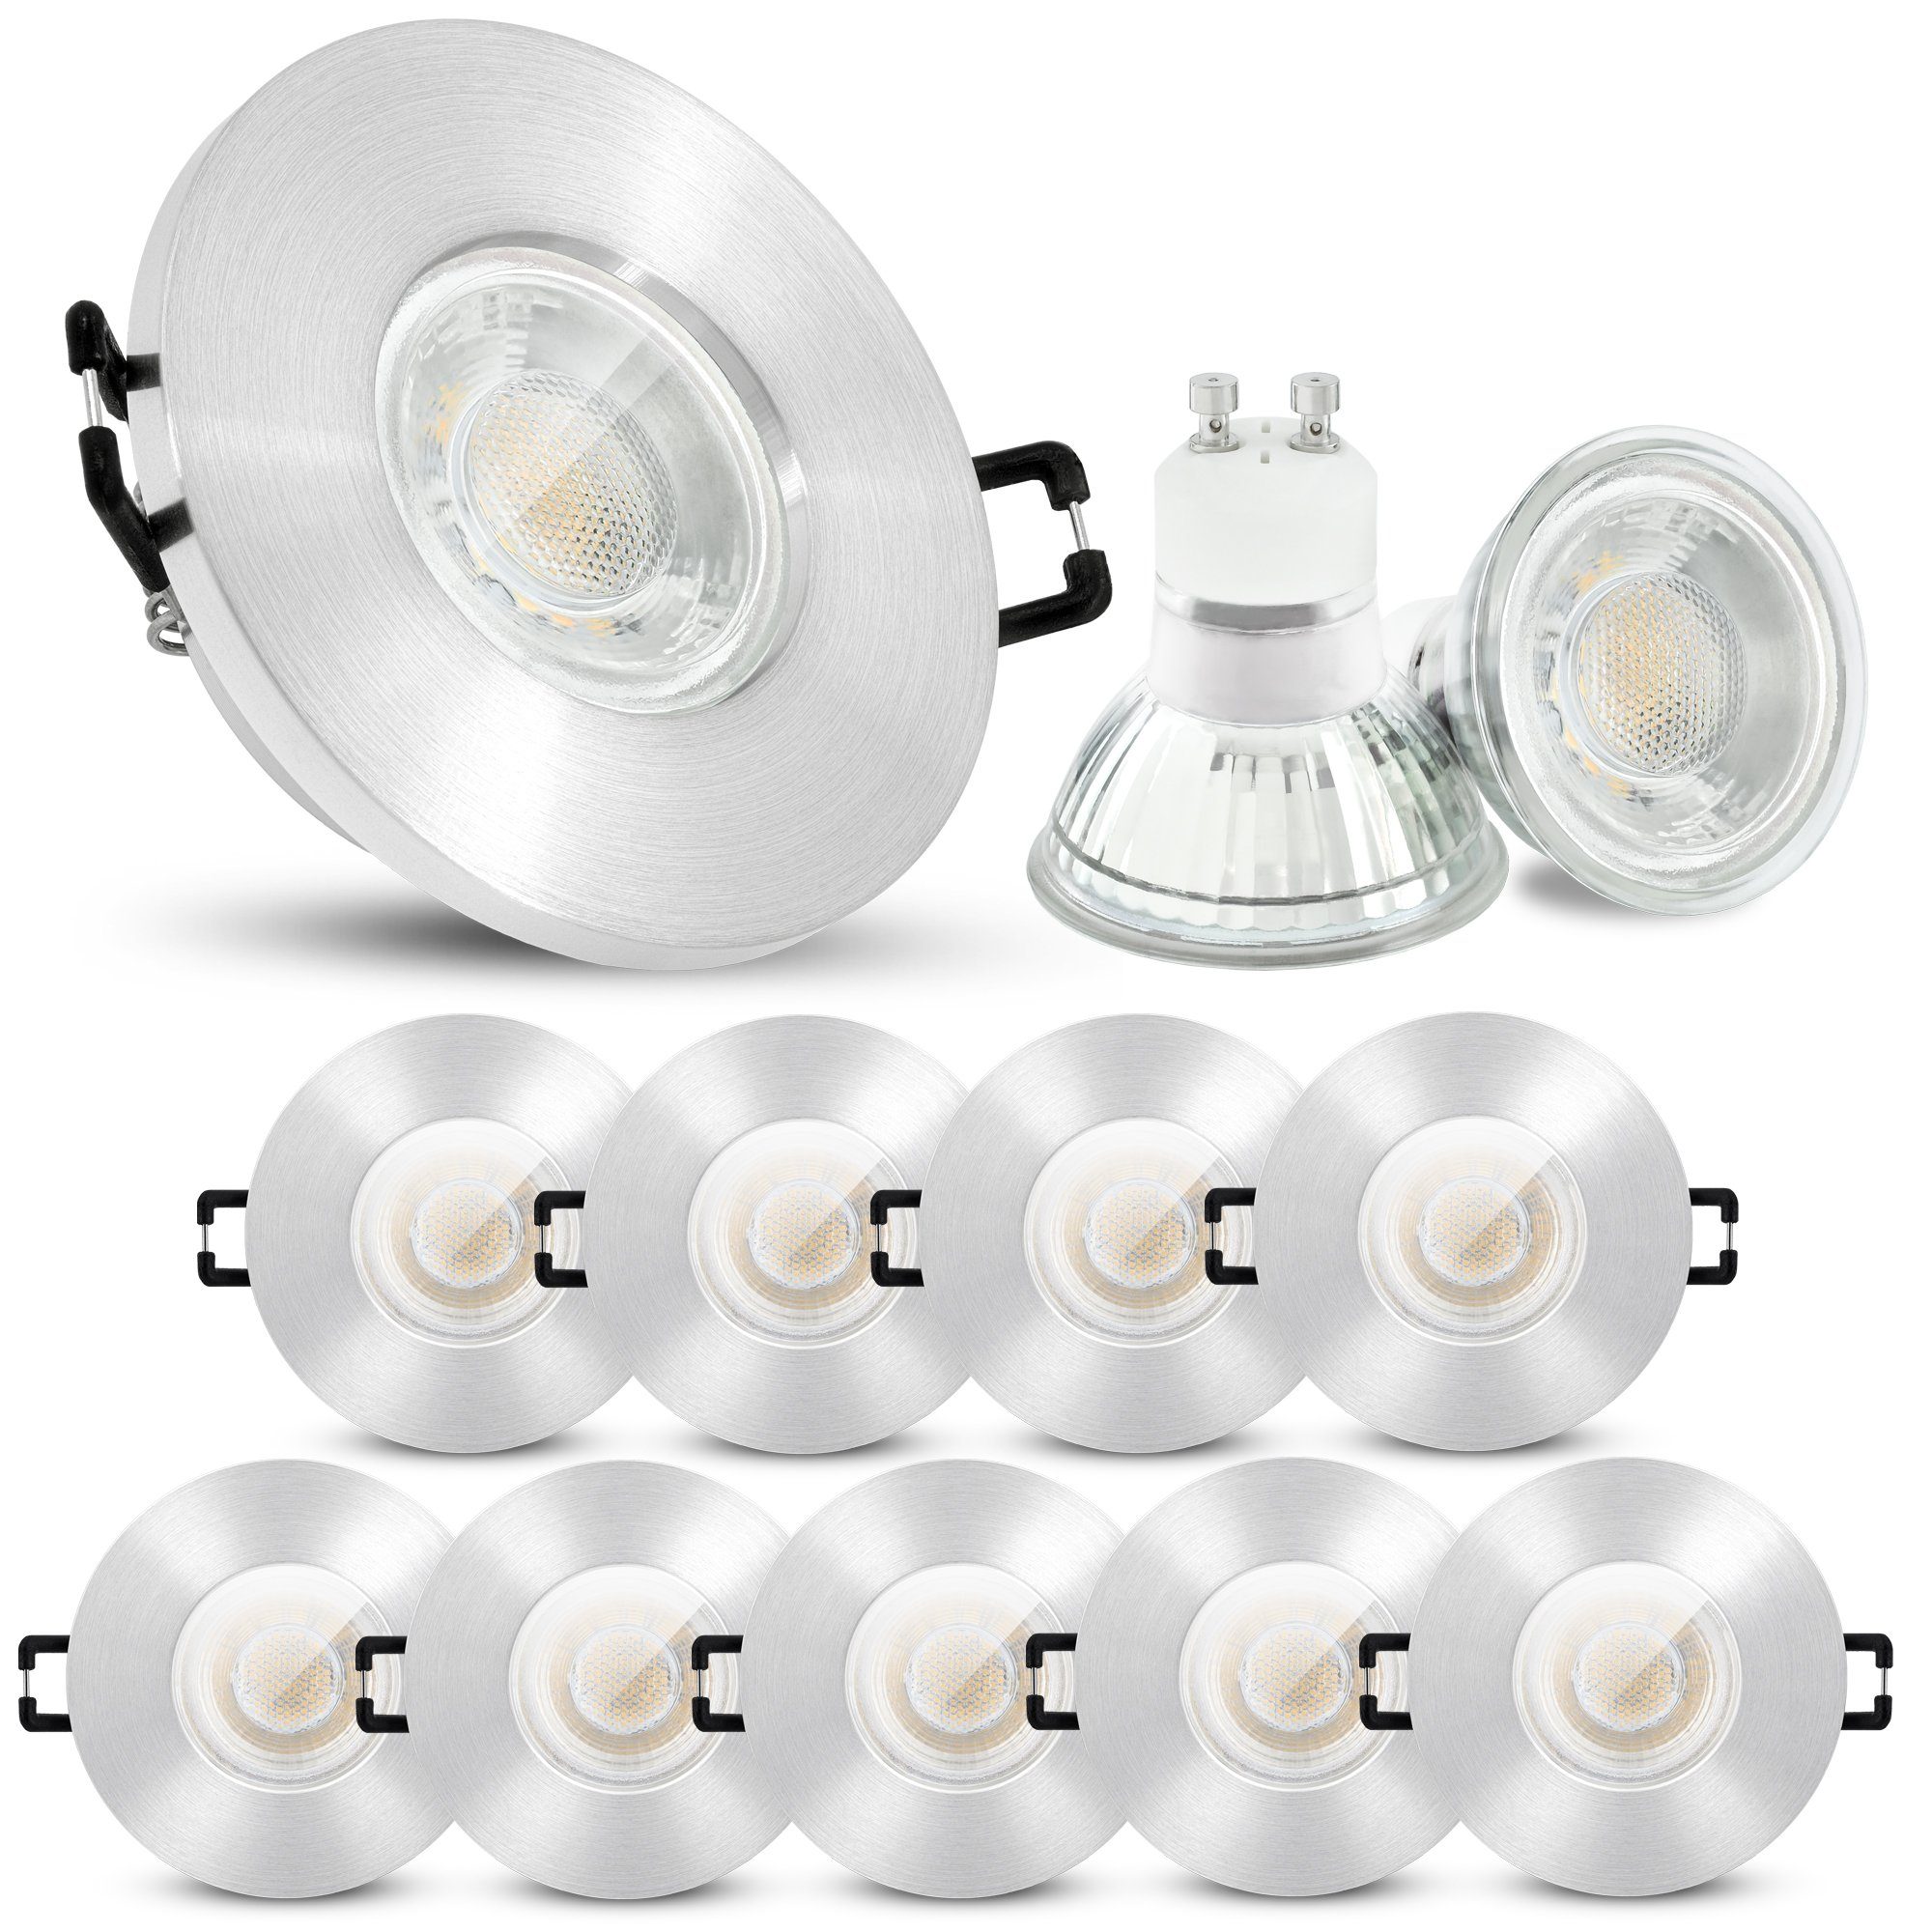 linovum LED Einbaustrahler 10er Set LED Einbauleuchten IP65 warmweiss GU10 6W 230V, Leuchtmittel inklusive, Leuchtmittel inklusive